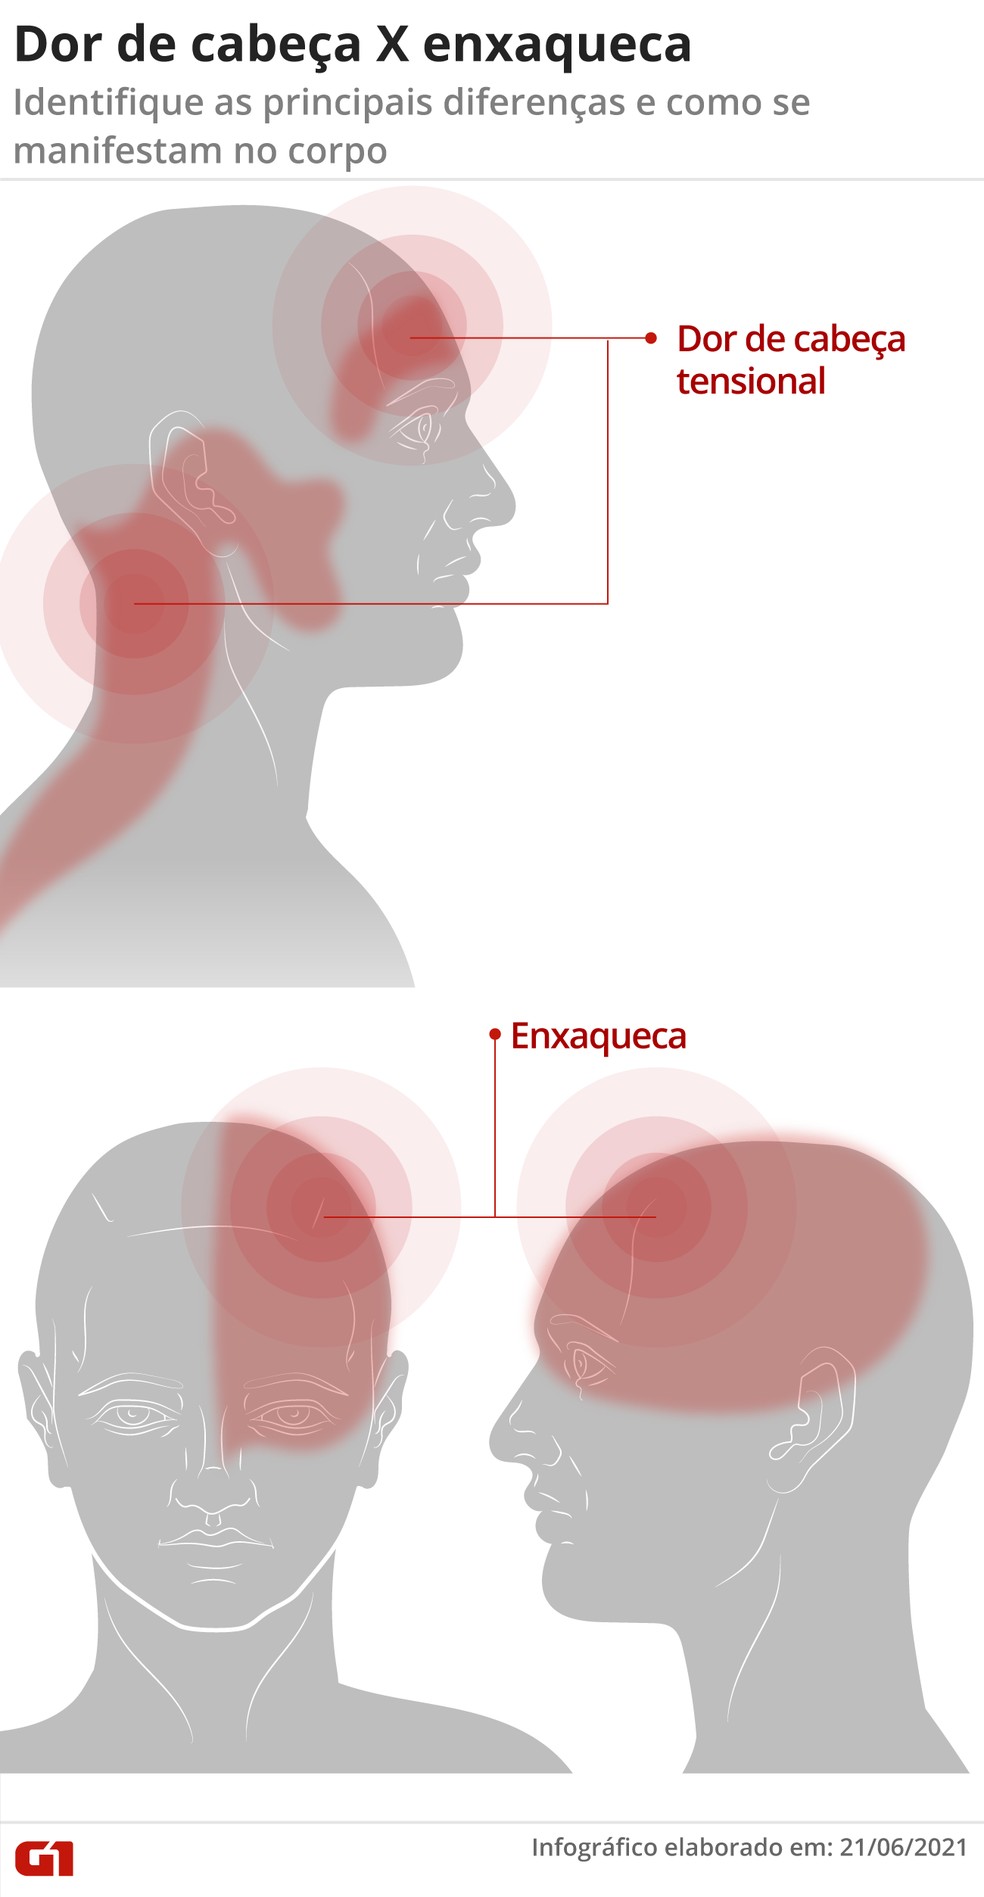 A dor sentida durante as crises de enxaqueca e de dor de cabeça tensional são em locais diferentes — Foto: Arte G1